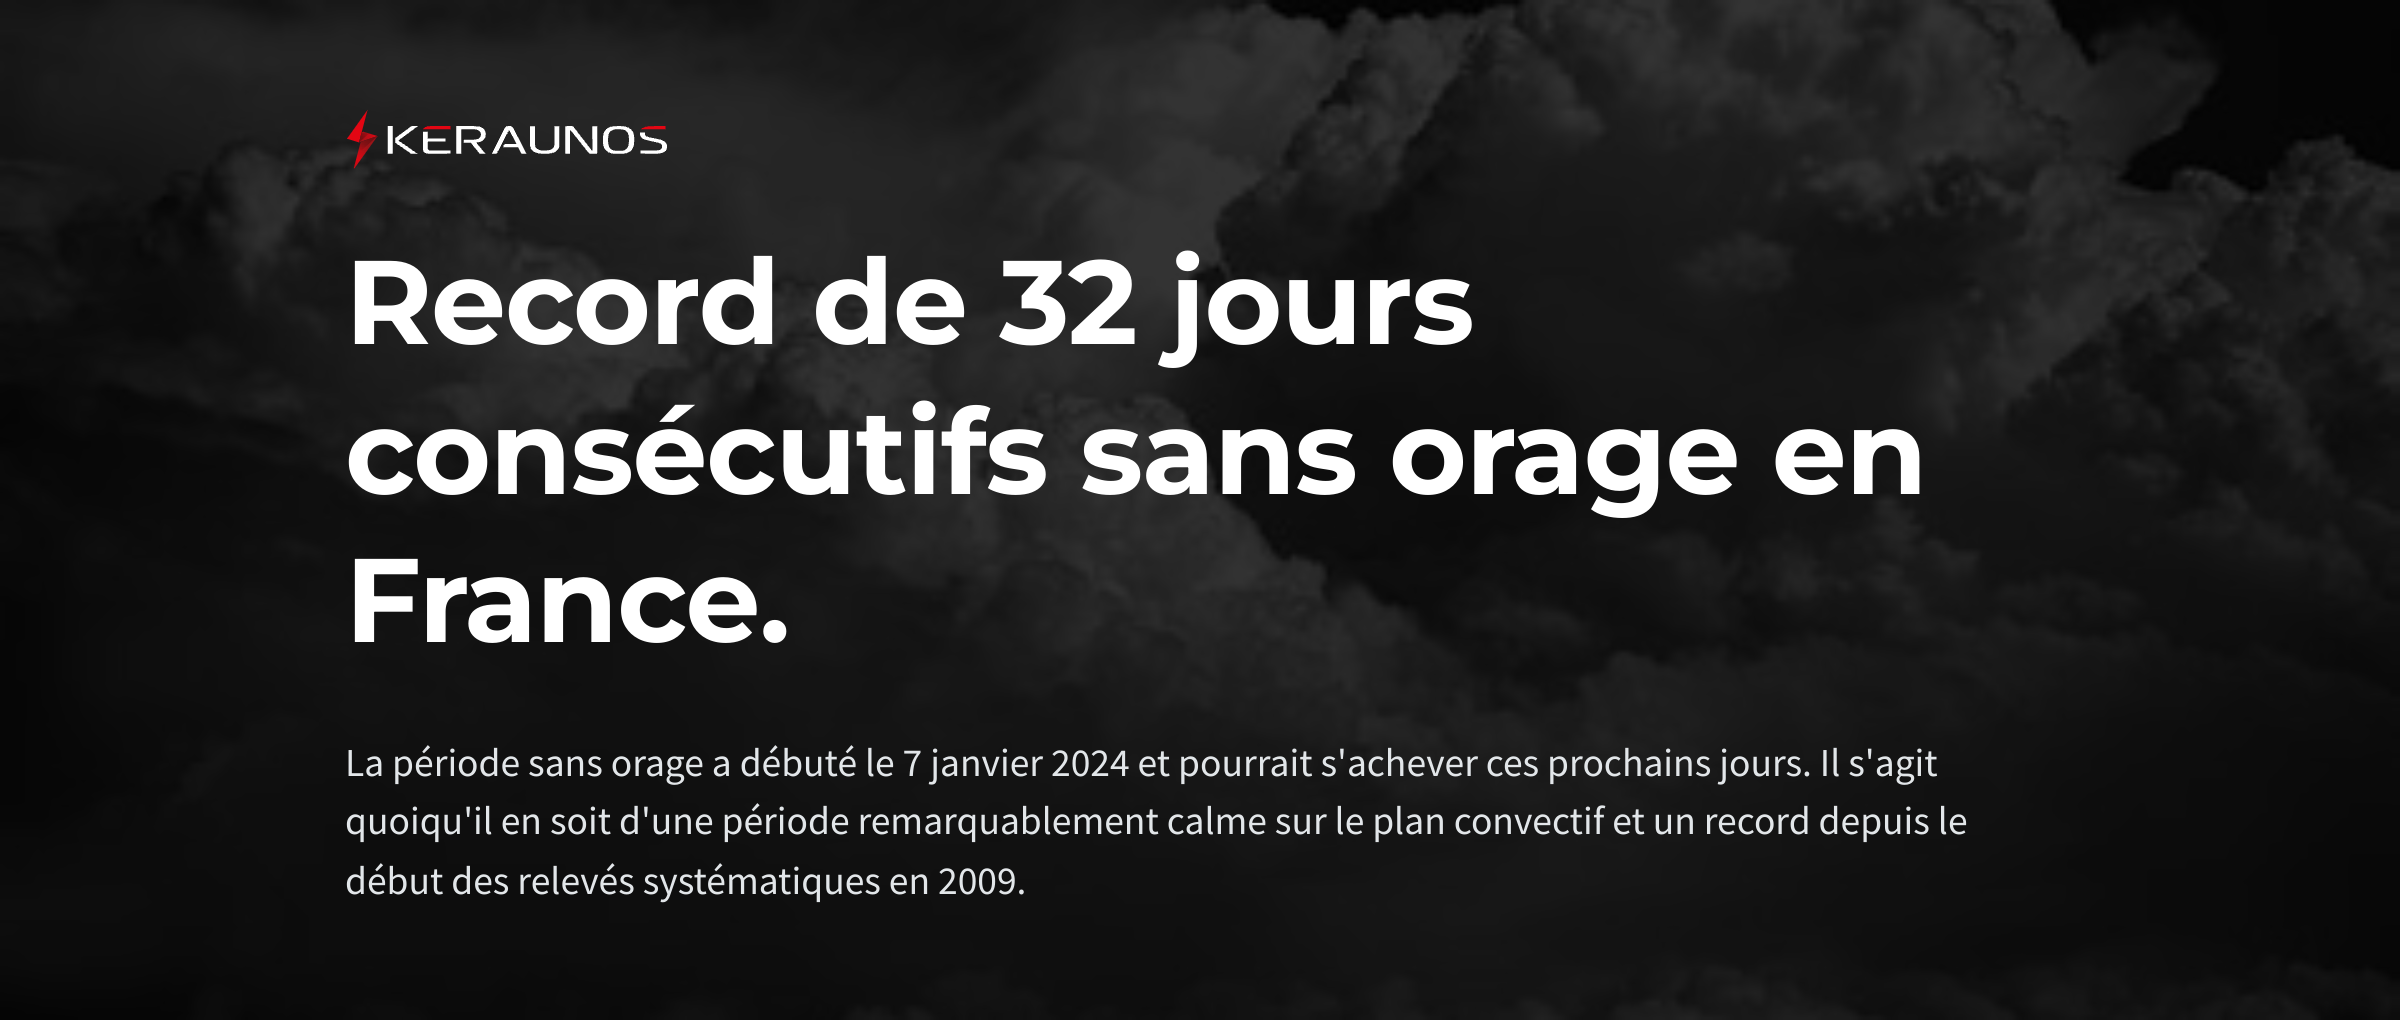 <p>L'activité orageuse est réduite à néant depuis début janvier en France. La période de 32 jours qui vient de s'écouler est la plus longue sans orage depuis le début des relevés systématiques il y a 15 ans.</p>